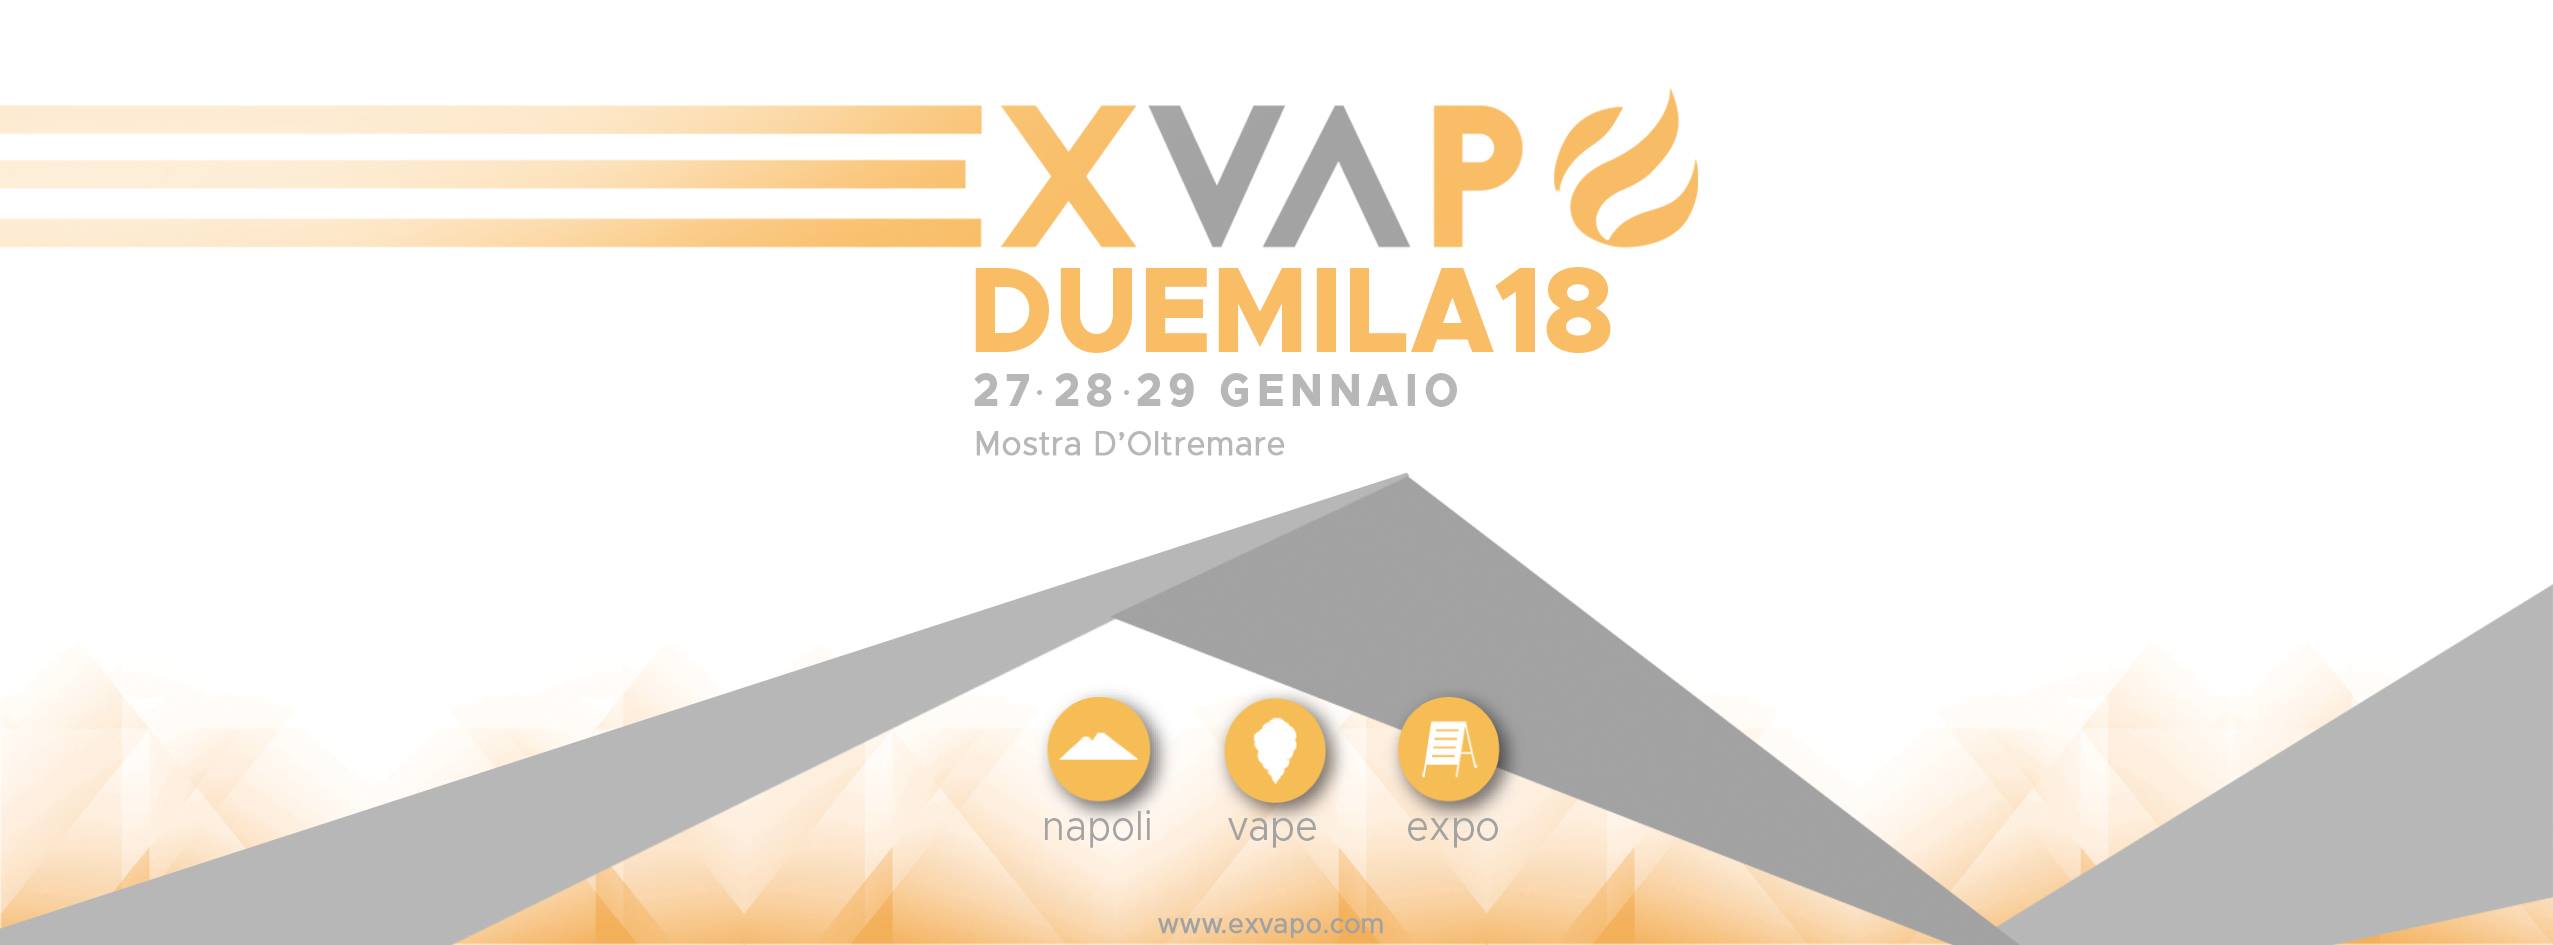 EXVAPO 2018: la fiera ci sarà… e sarà doppia!